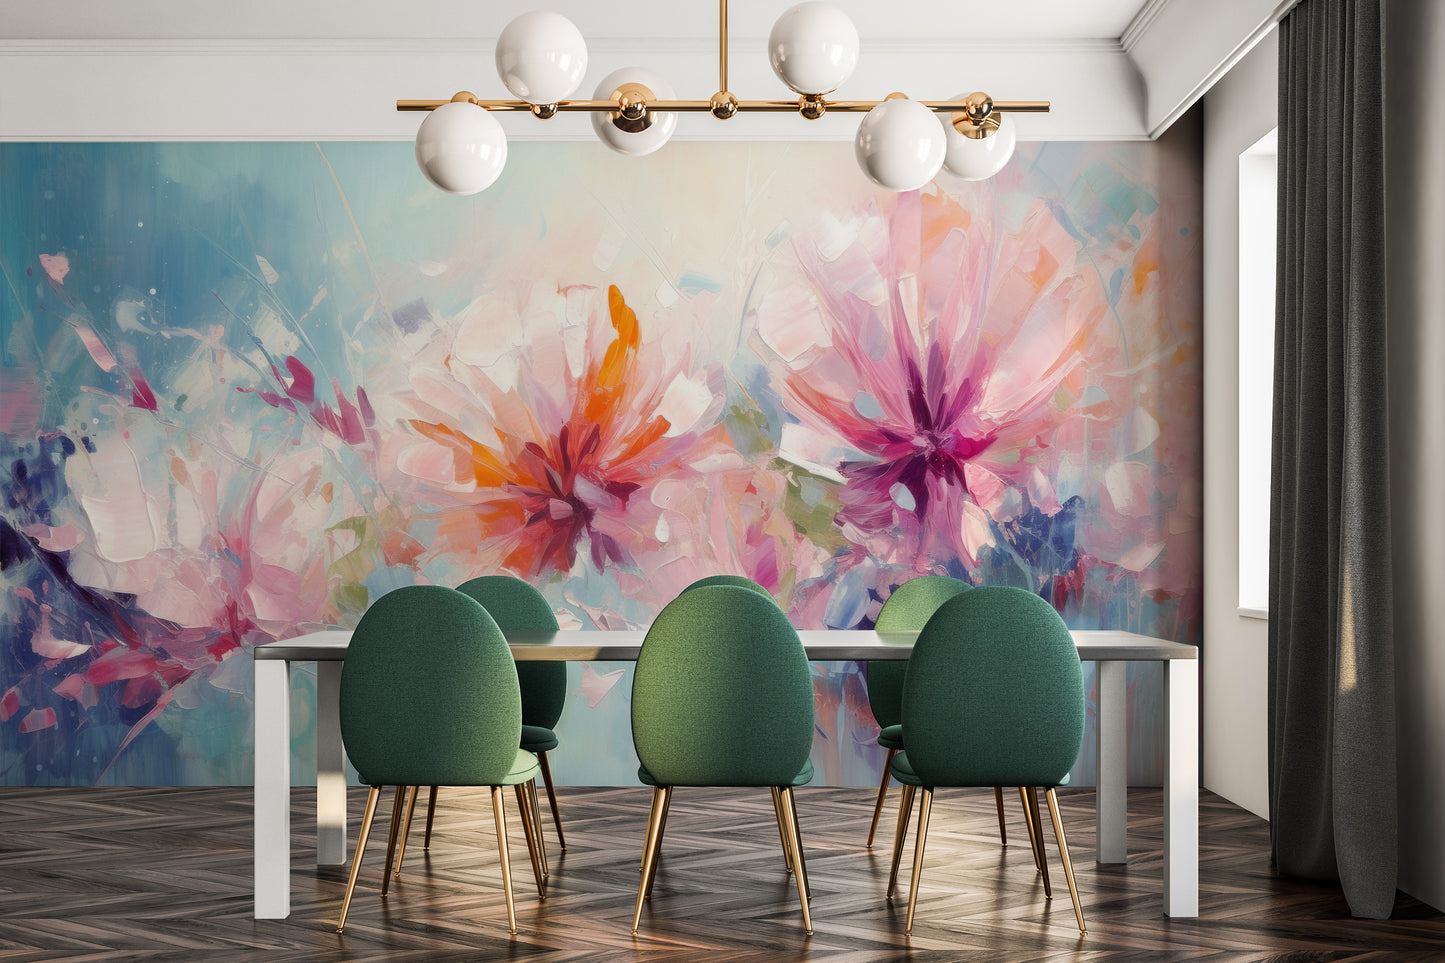 Fototapeta malowana o nazwie Blushing Floral Delicacy pokazana w aranżacji wnętrza.